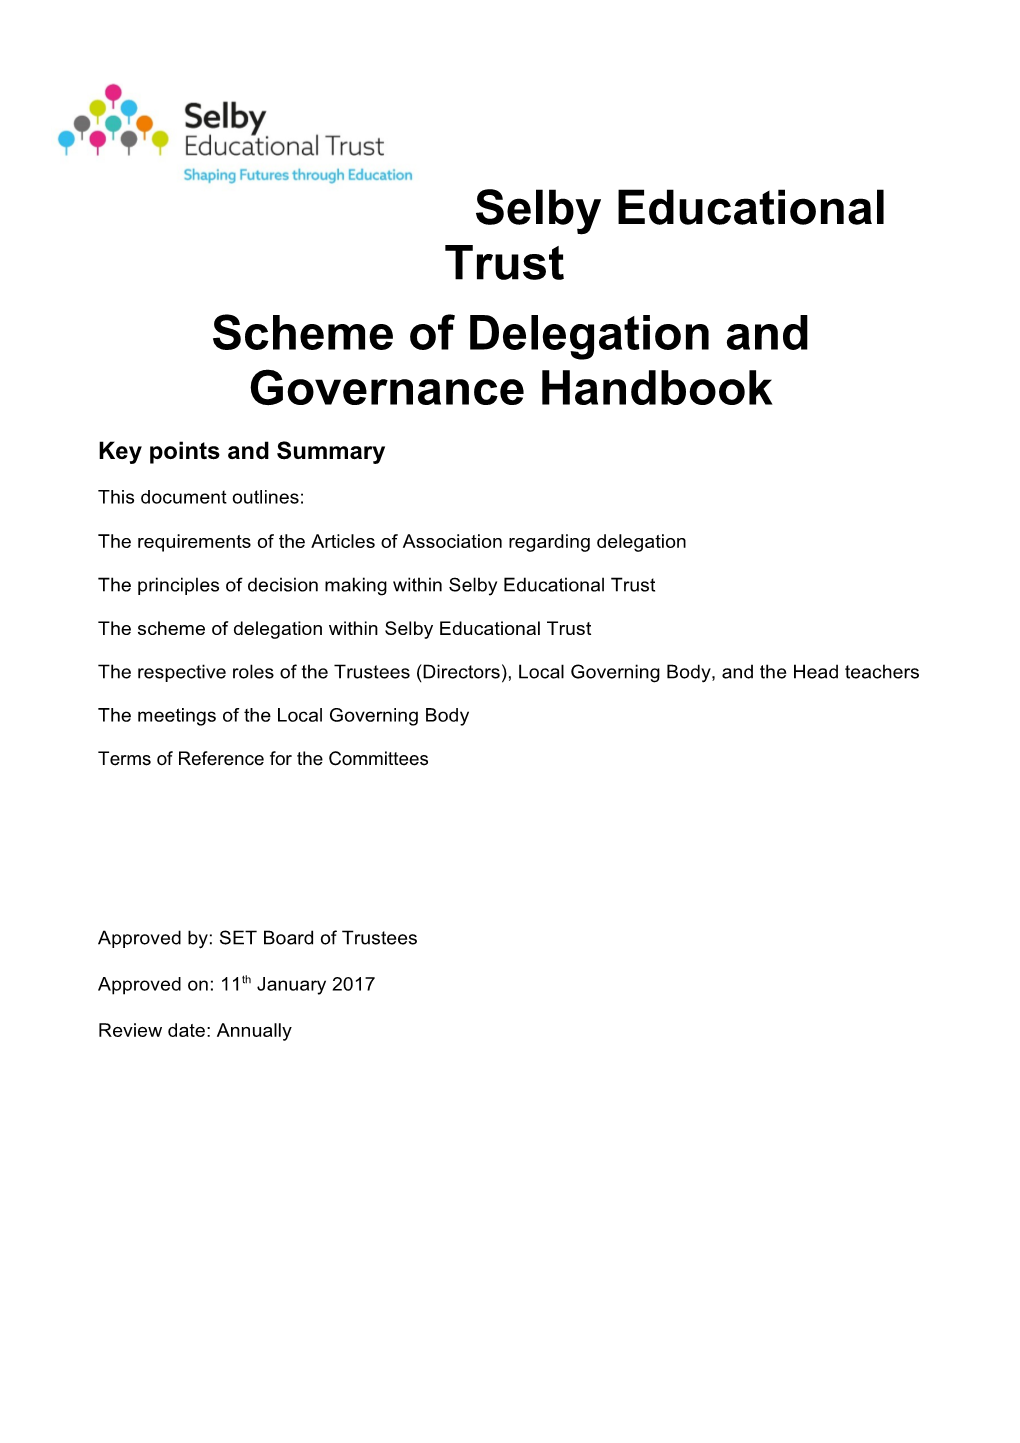 Scheme of Delegation and Governance Handbook